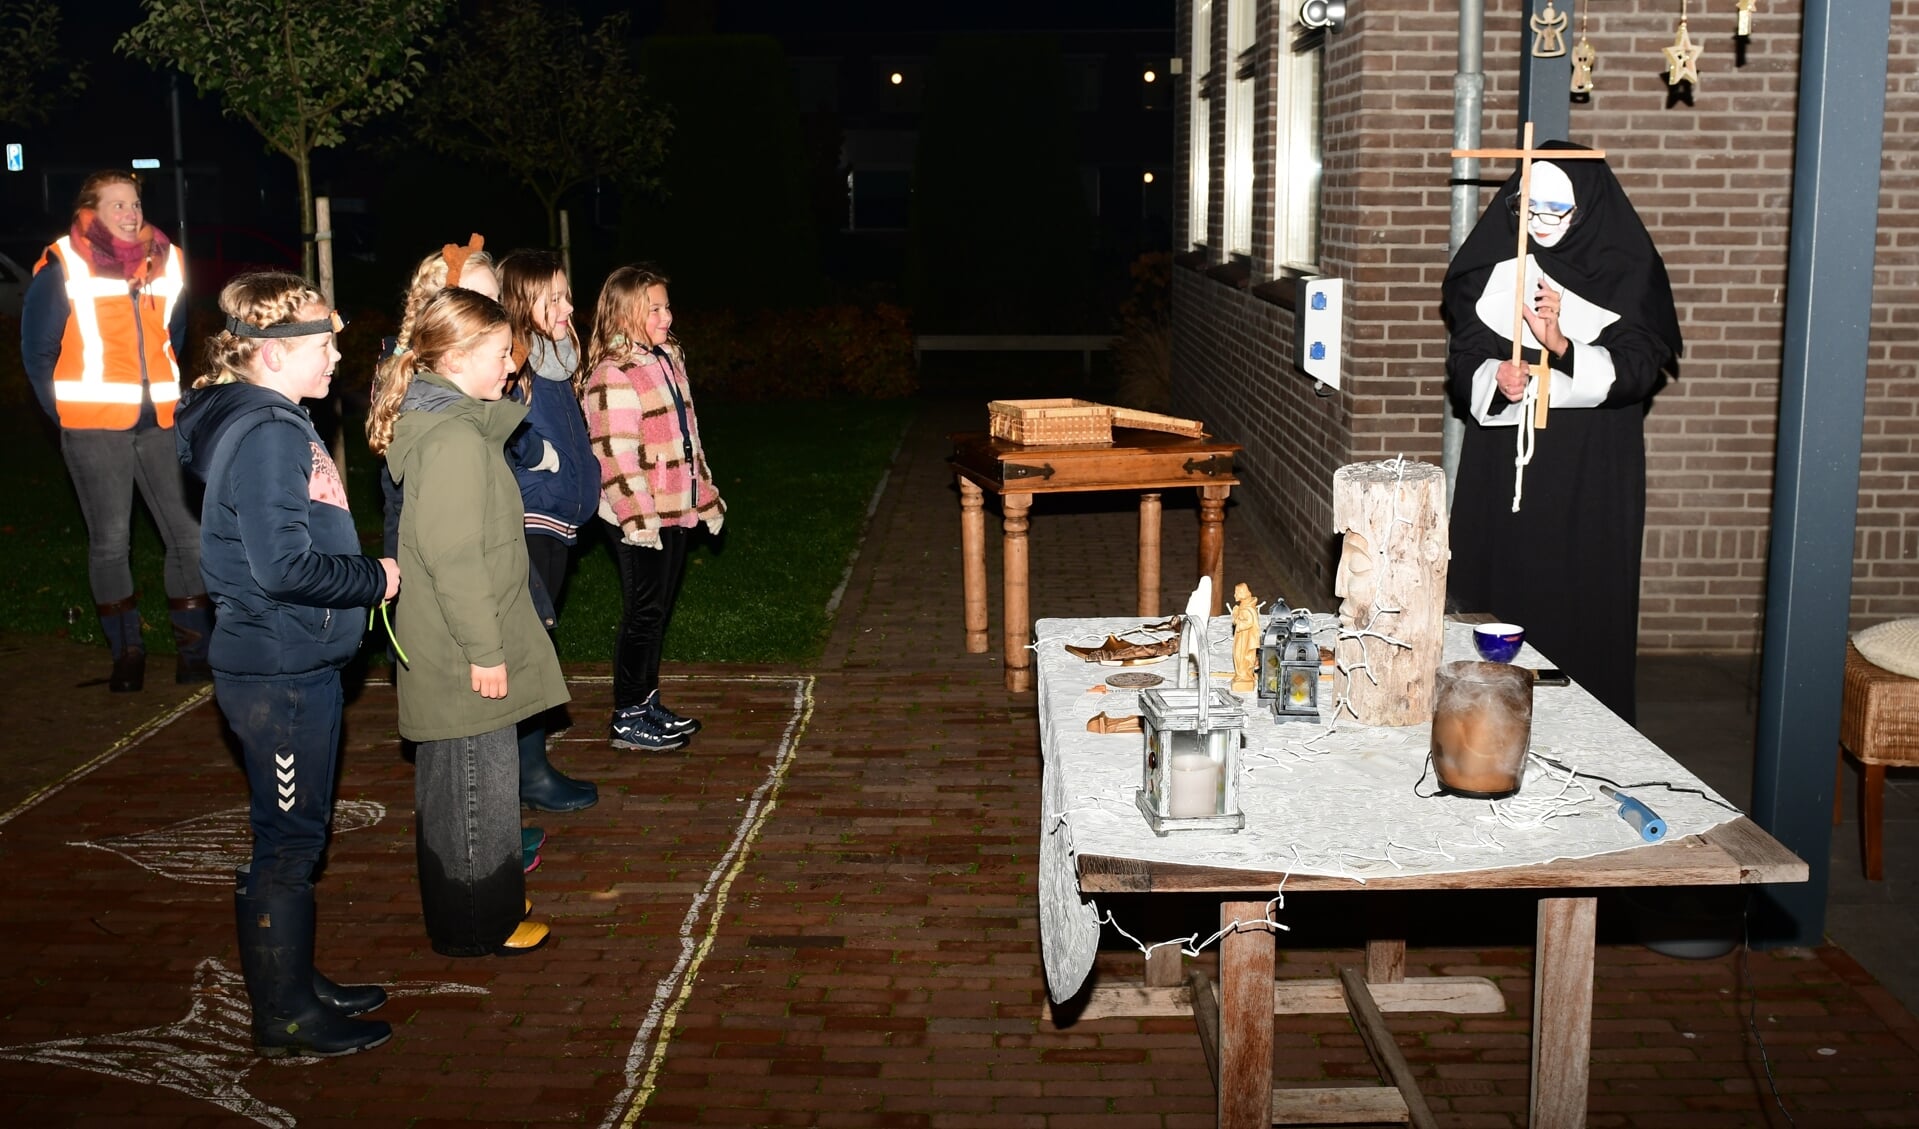 De kinderen worden gereinigd van alle spoken voor ze de Kei weer in mogen. Foto: Achterhoekfoto.nl/Paul Harmelink